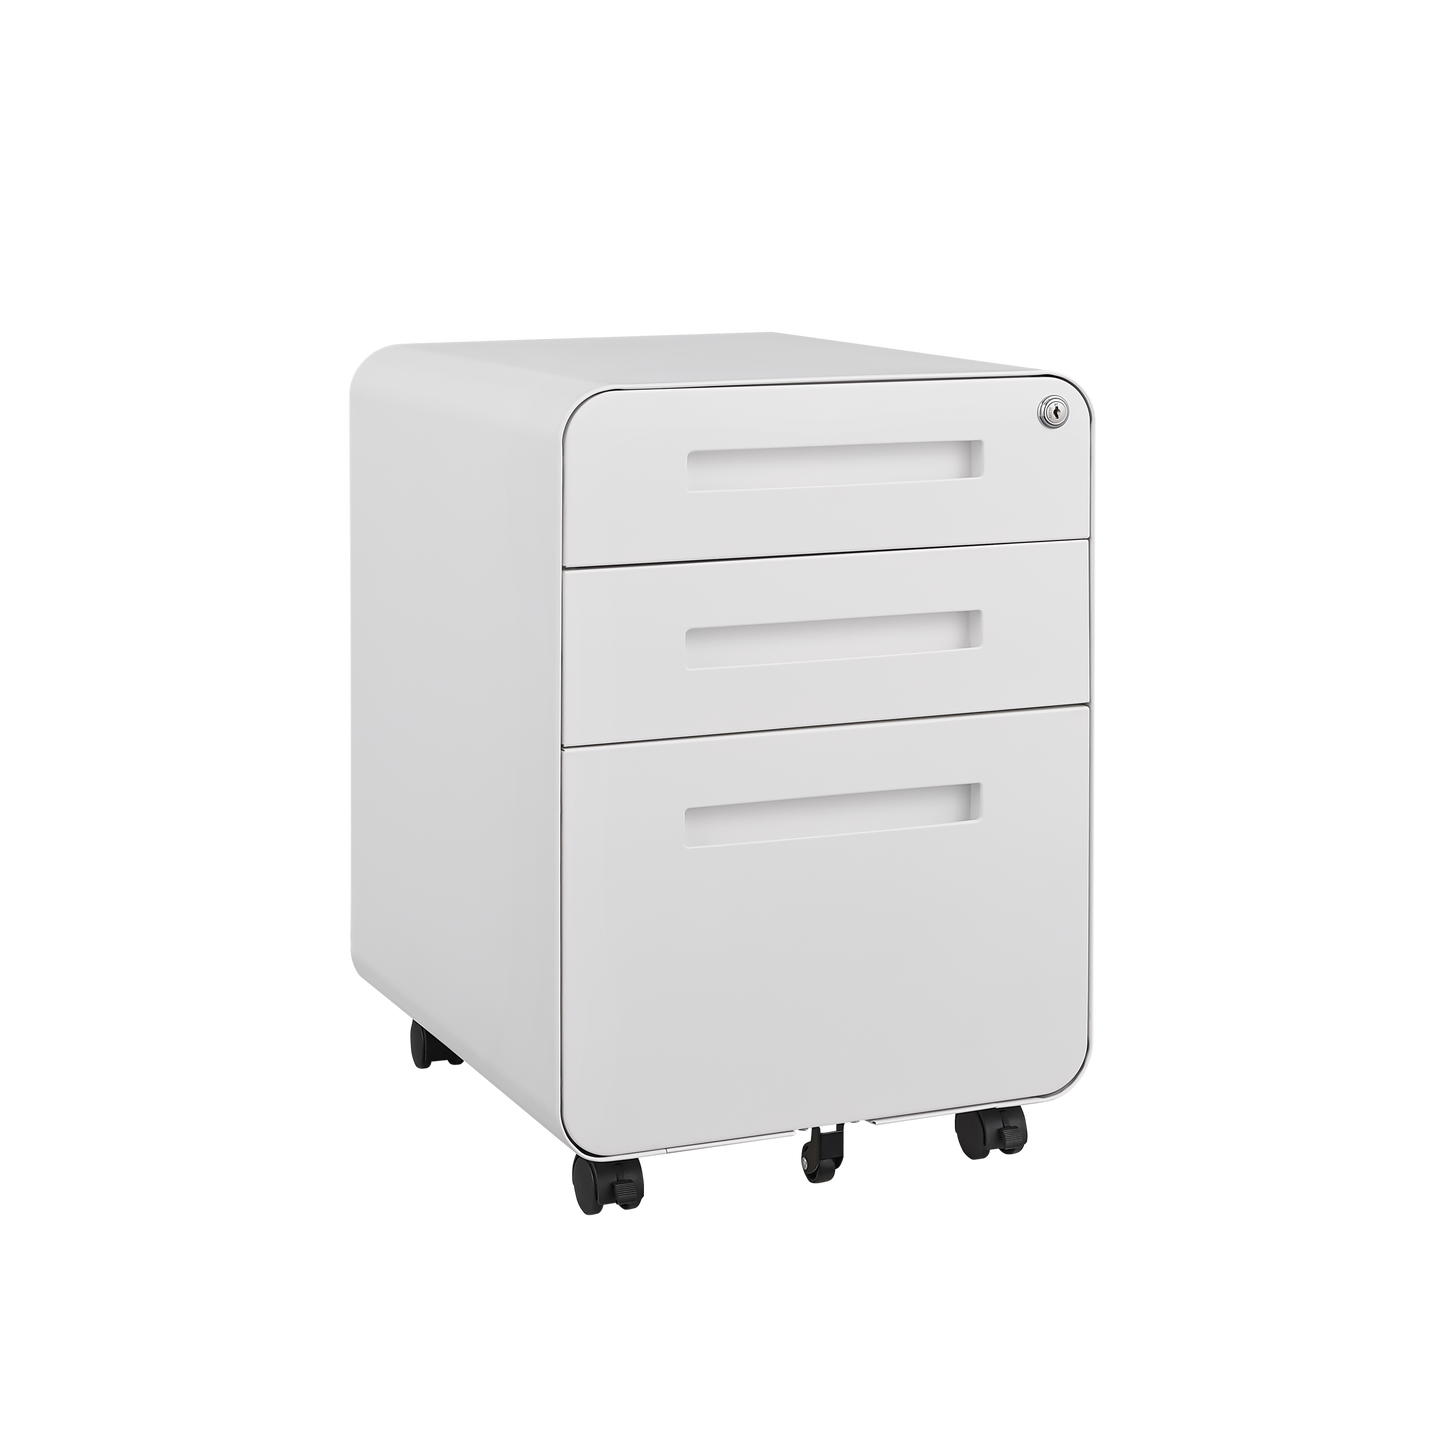 3 Drawer Mobile File Cabinet Under Desk Office, Storage